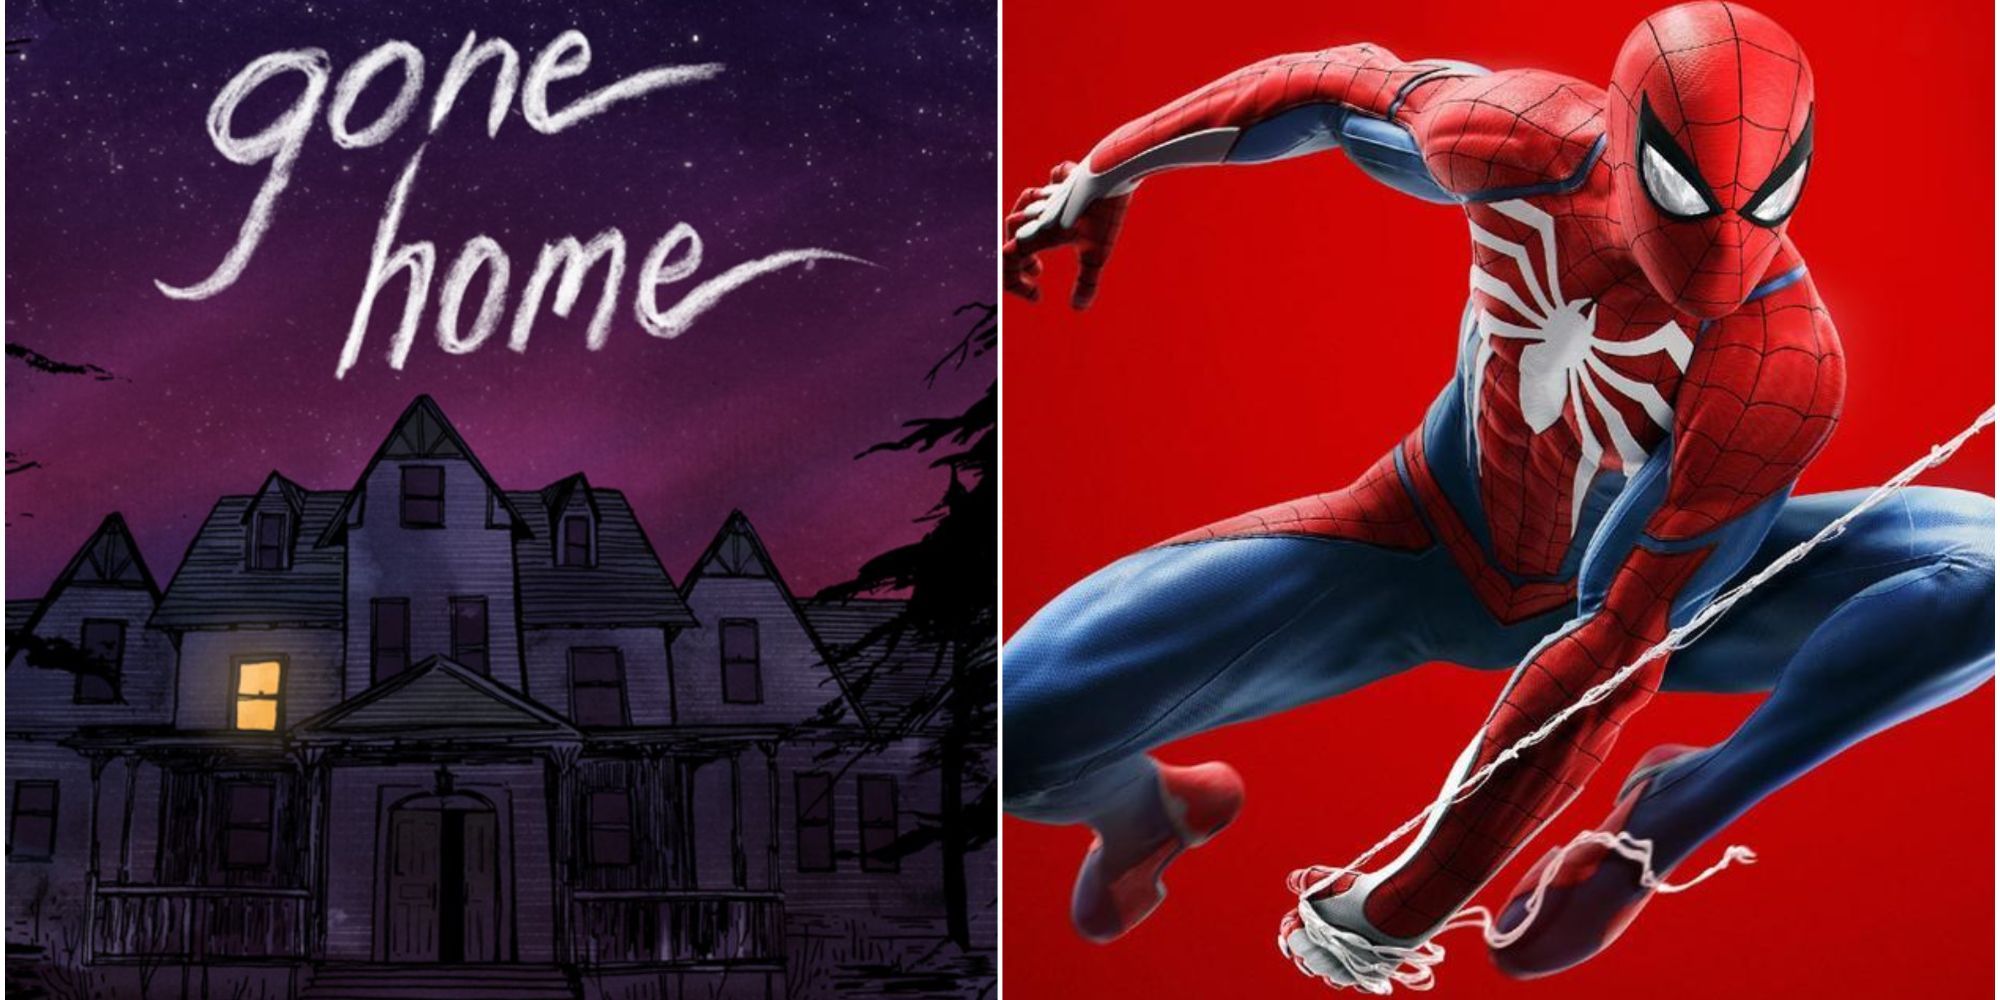 O pôster do título de 'Gone Home', que é uma casa gótica 2D sob um céu roxo, ao lado do Homem-Aranha lançando uma teia